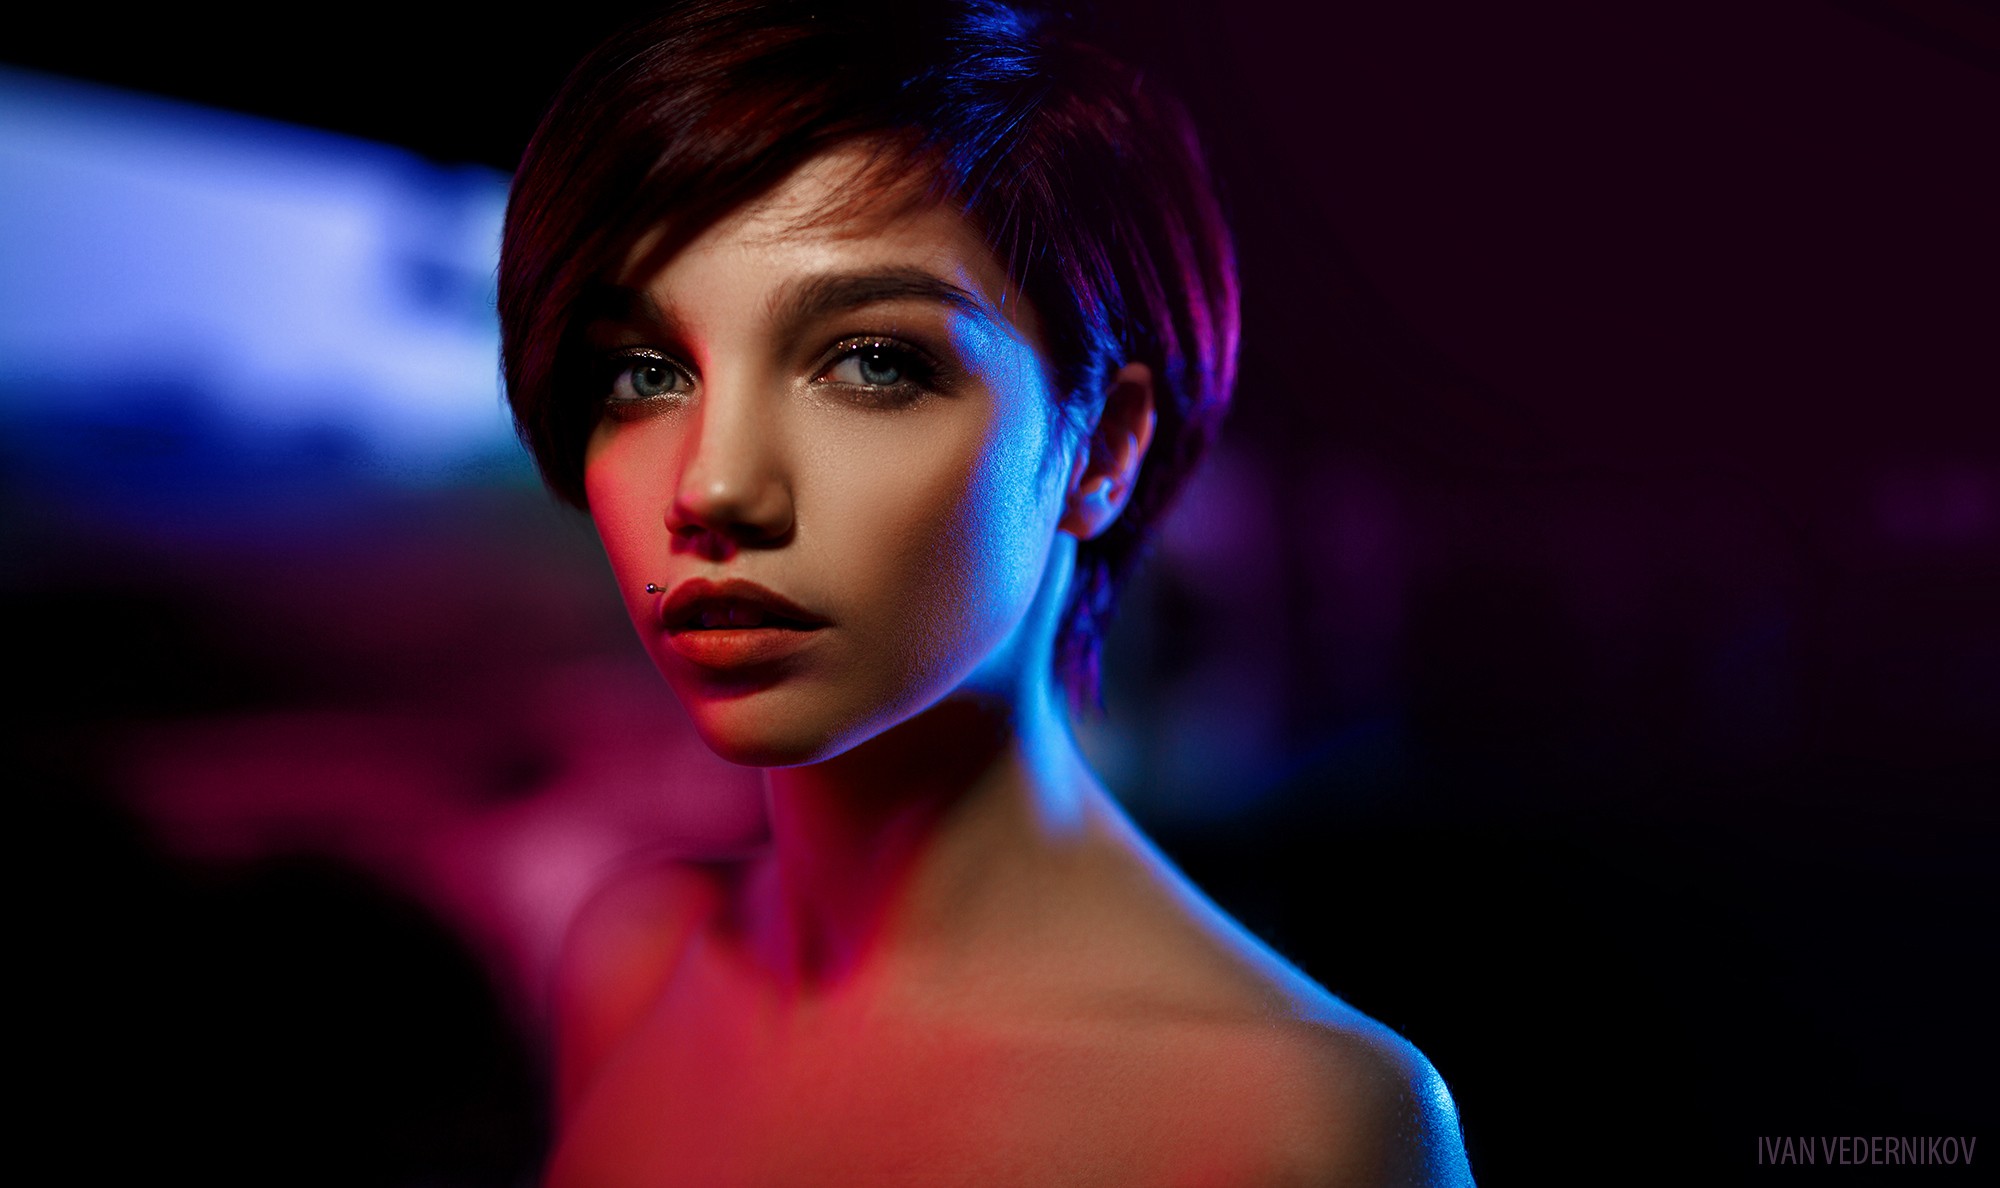 Women Brunette Short Hair Blue Eyes Pierced Lip Face Portrait Colorful Bare Shoulders Ivan Vederniko 2000x1188